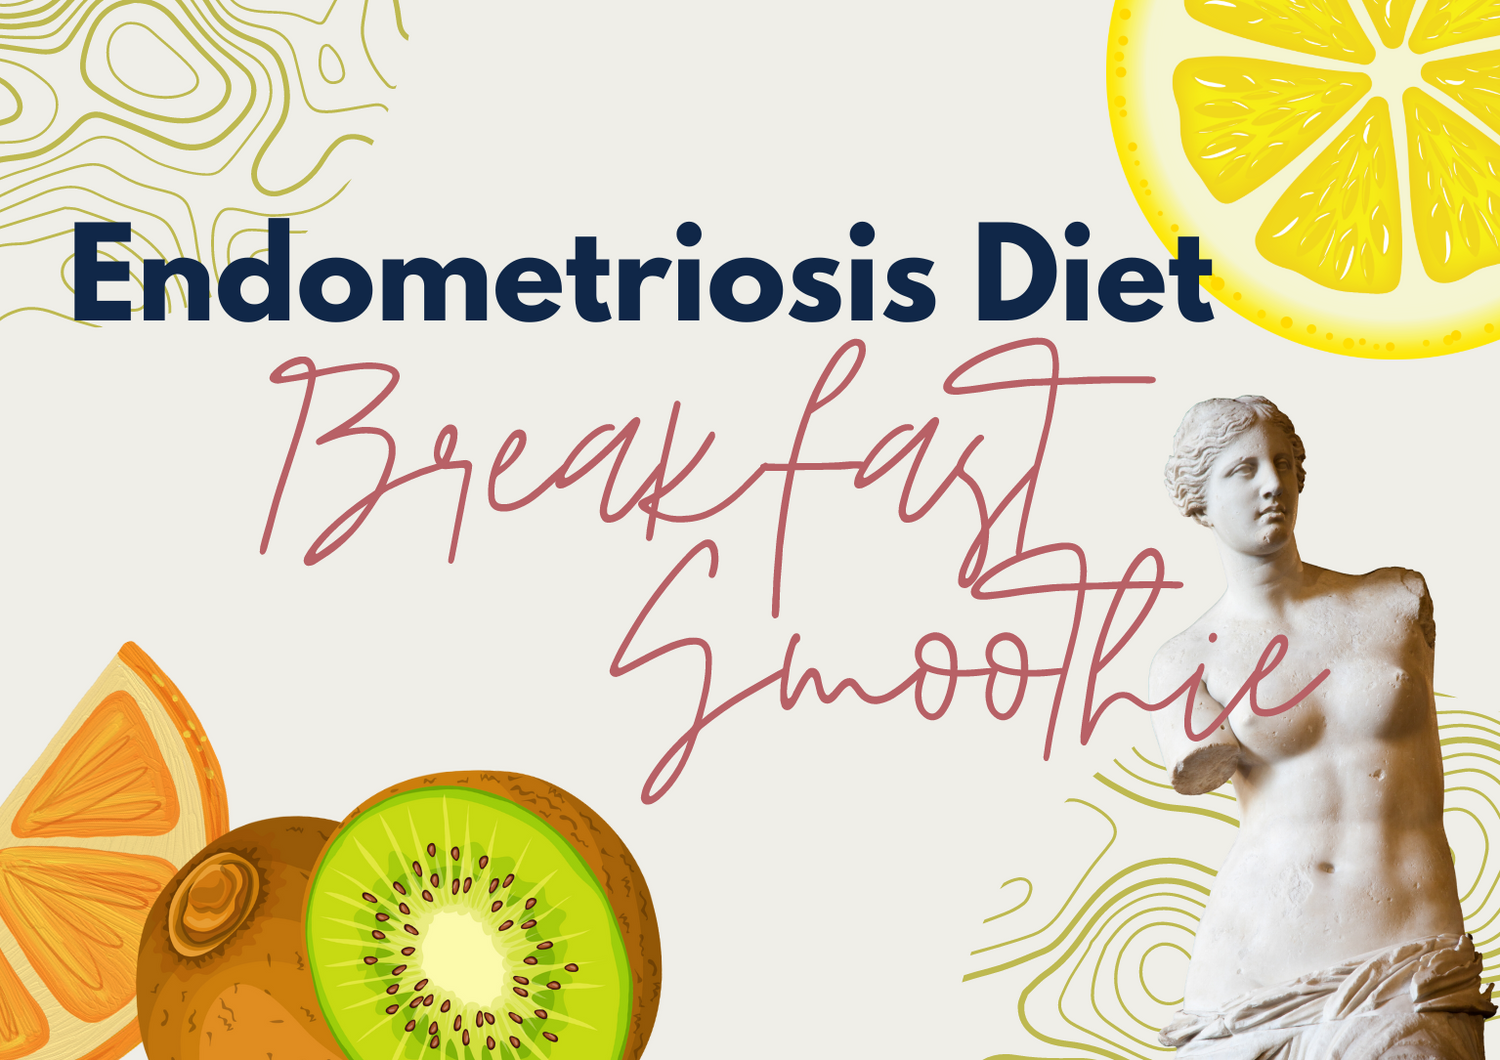 Endometriosis Diet: Breakfast Smoothie